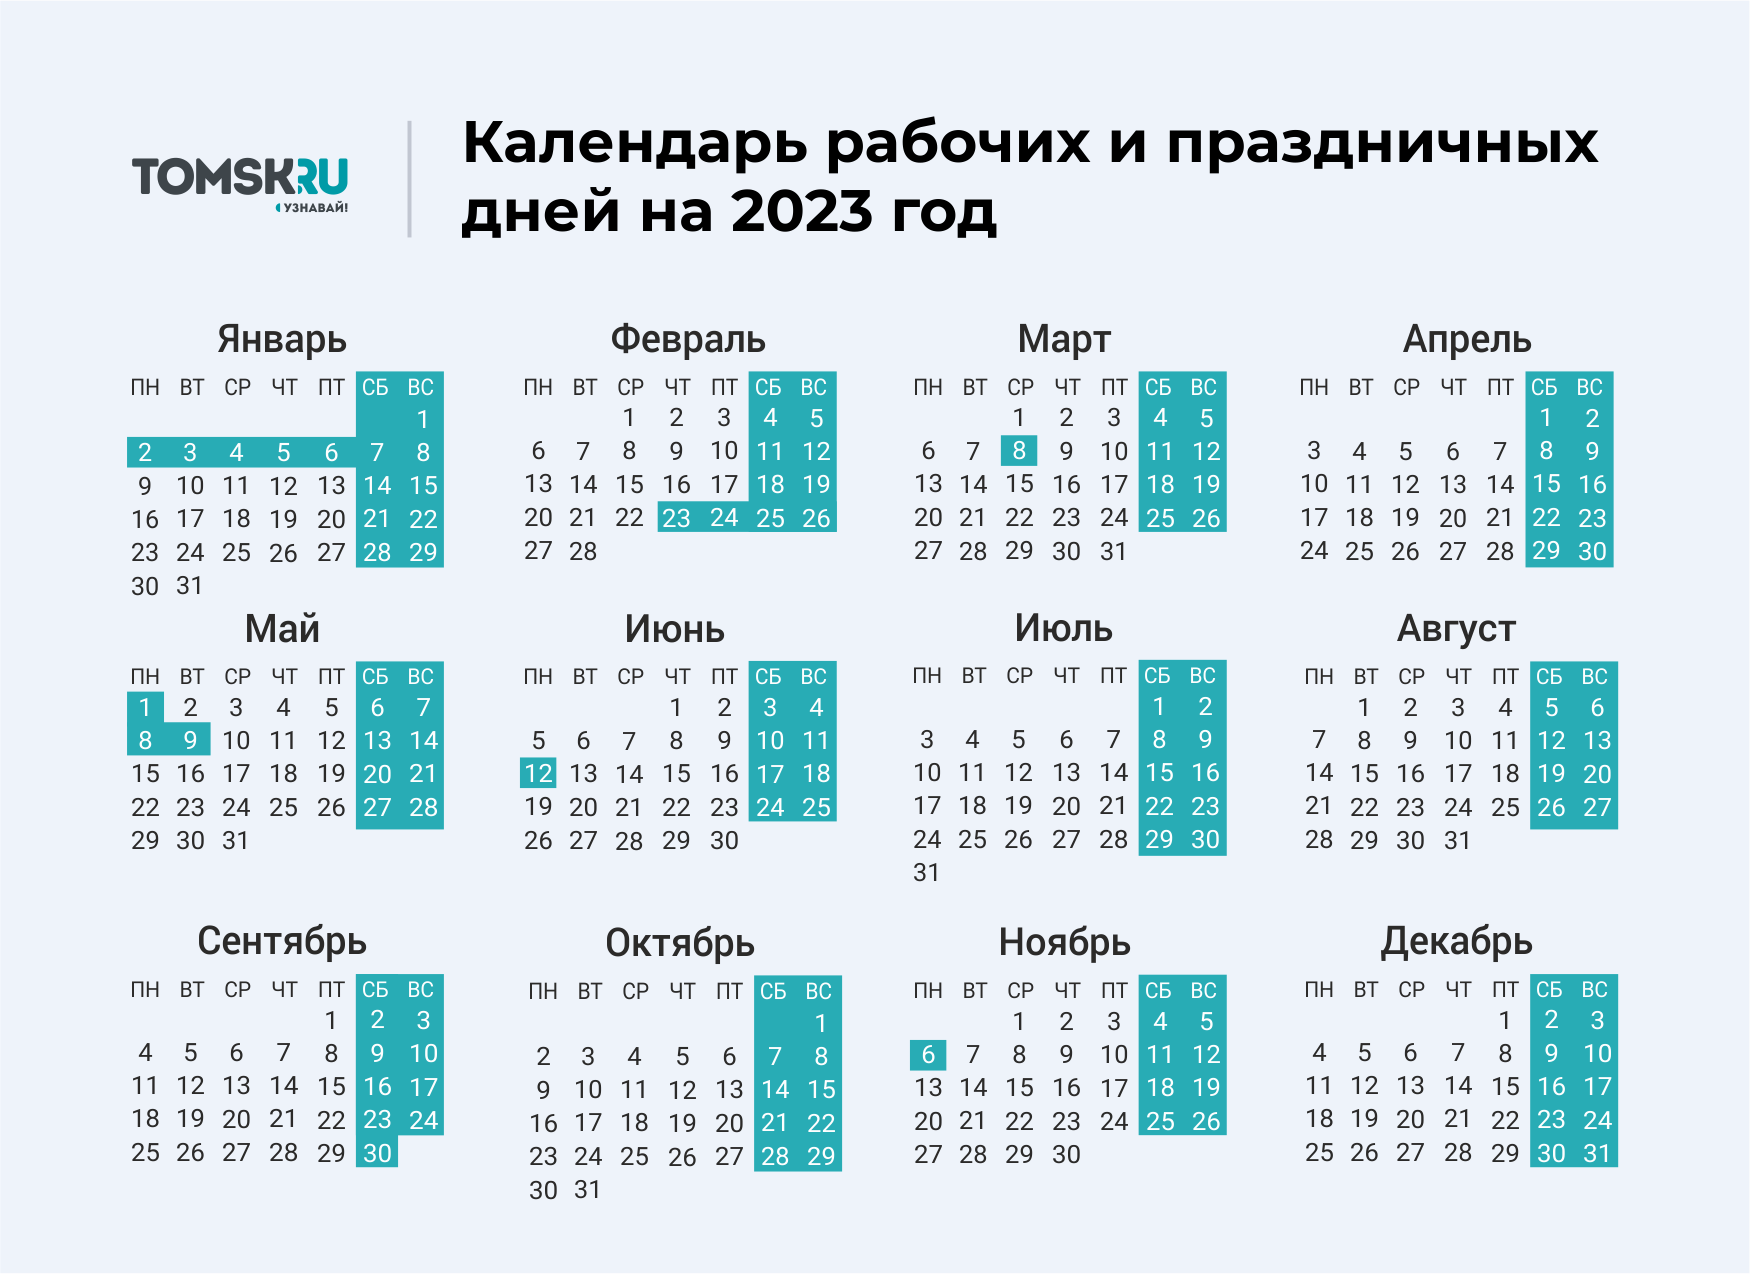 Как переносятся майские праздники в 2024 году. Выходные дни в 2023 году в России календарь. Календарь выходных и праздничных дней на 2023 год в России. Календарь праздничных выходеыхв 2023 году. Календарь на 2023 год с праздниками и выходными выходные снизу.